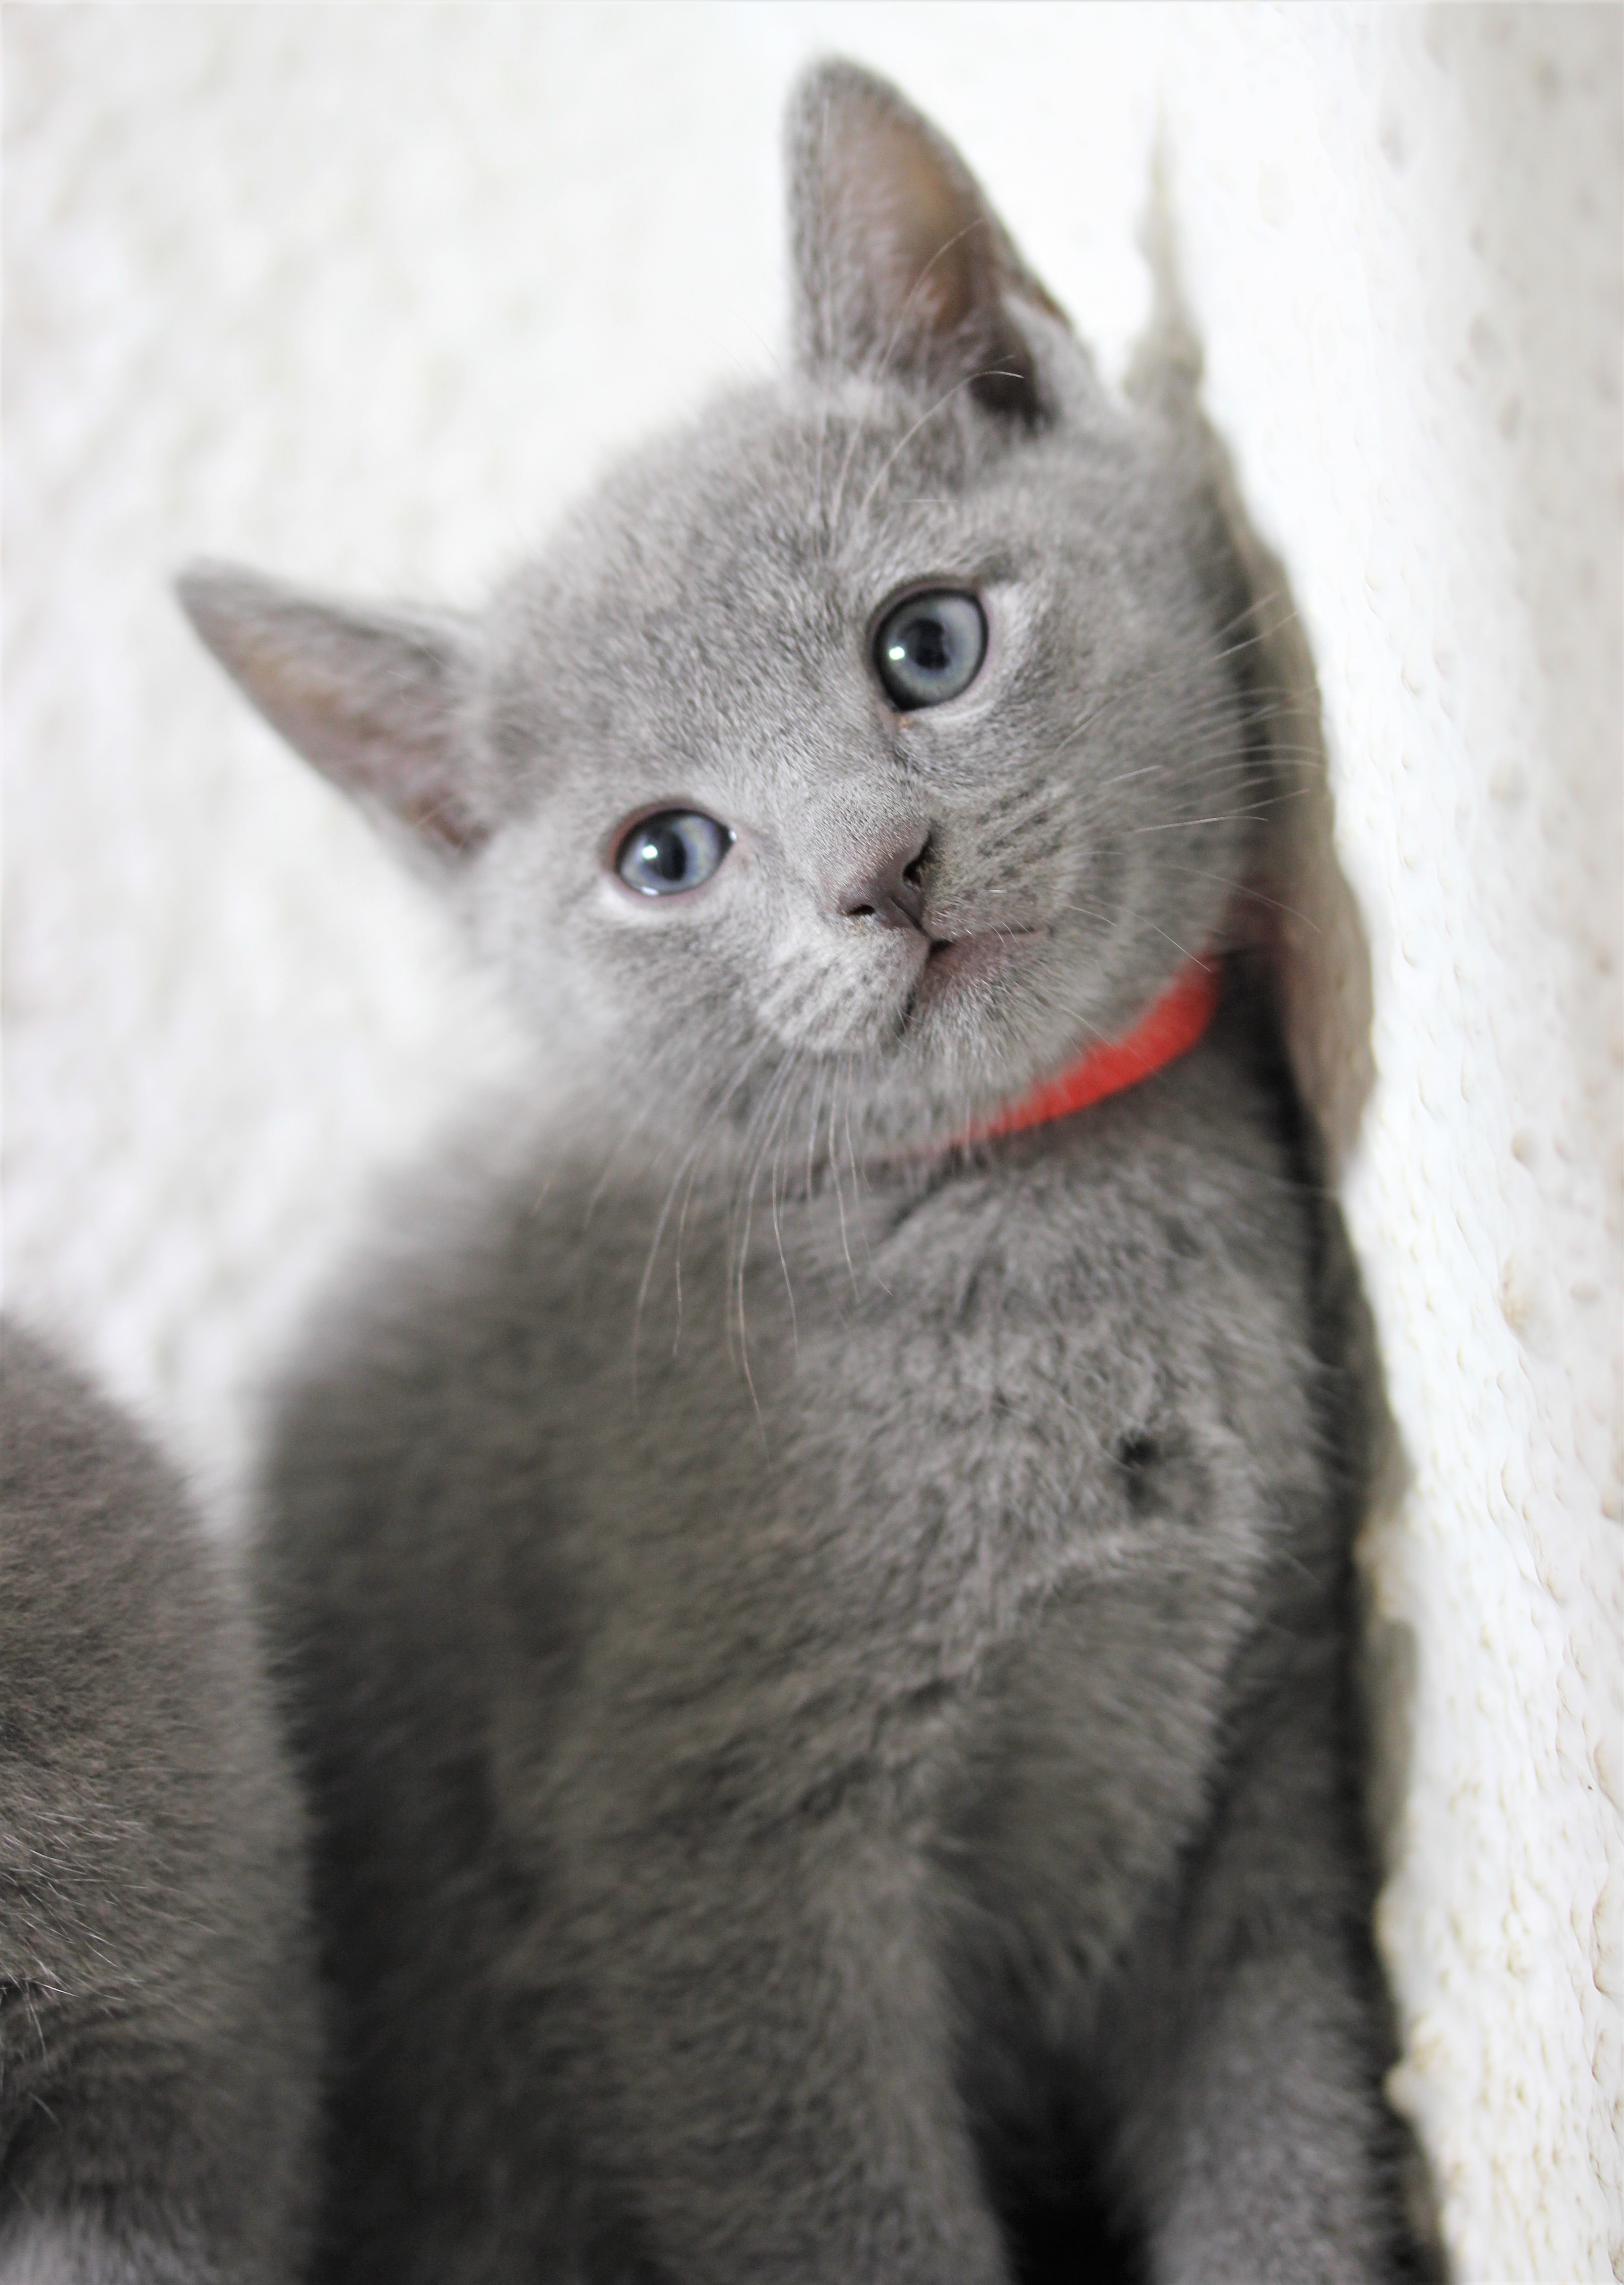 Almeja Palacio de los niños blanco lechoso gato azul ruso barcelona russian blue kitten – Ragnar 08 – CRIADERO GATOS  AZUL RUSO · RUSSIAN BLUE